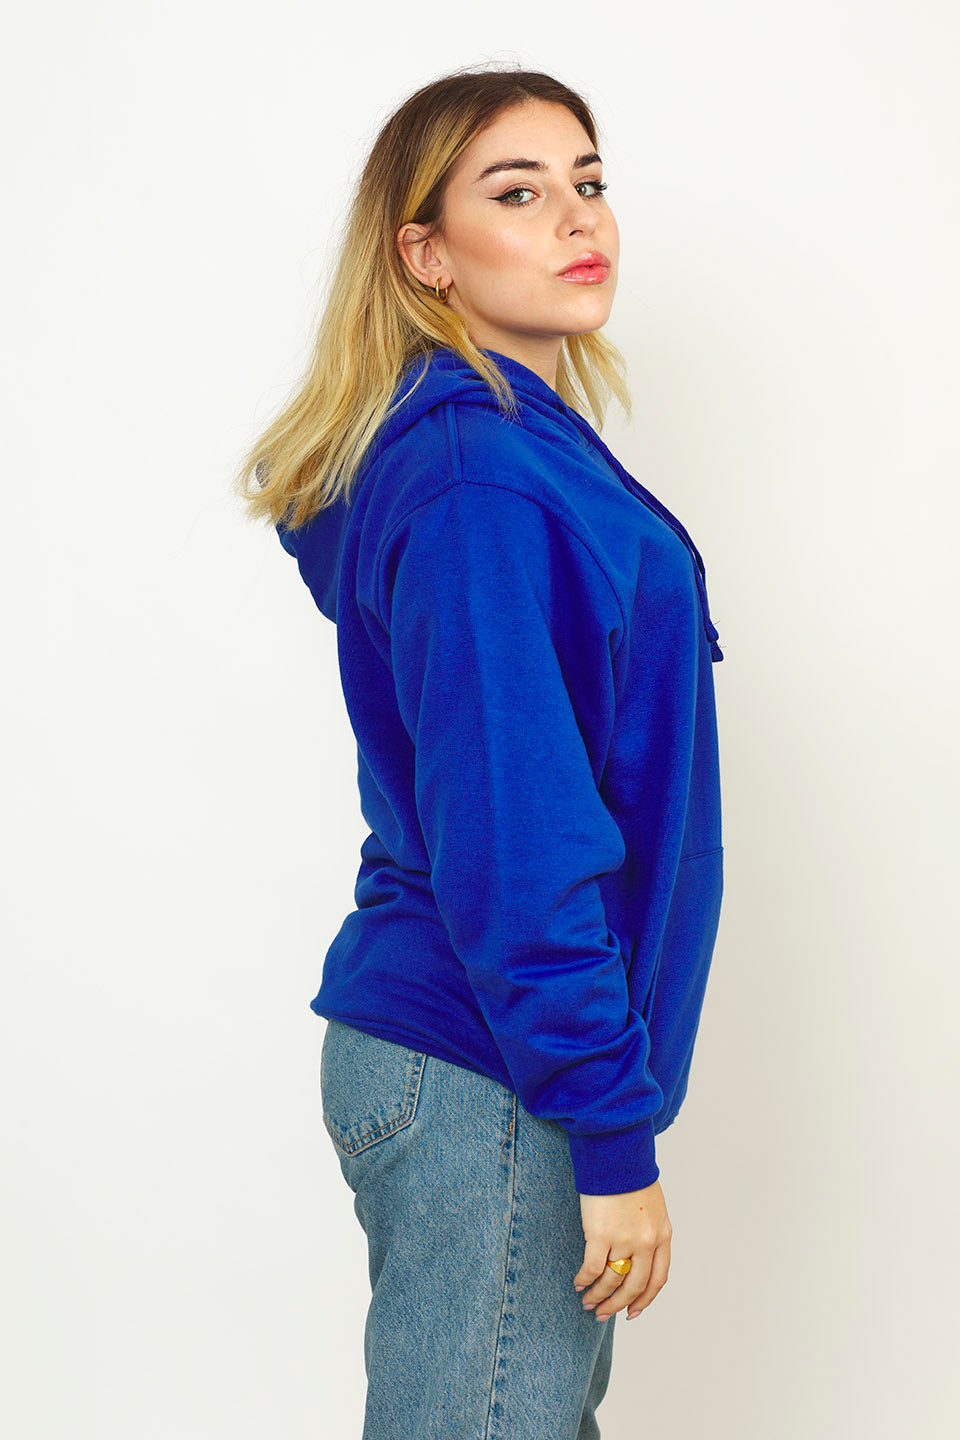 Radsow Apparel - Sweat Shirt à capuche London pour femmes Bleu Royal - Radsow Apparel 